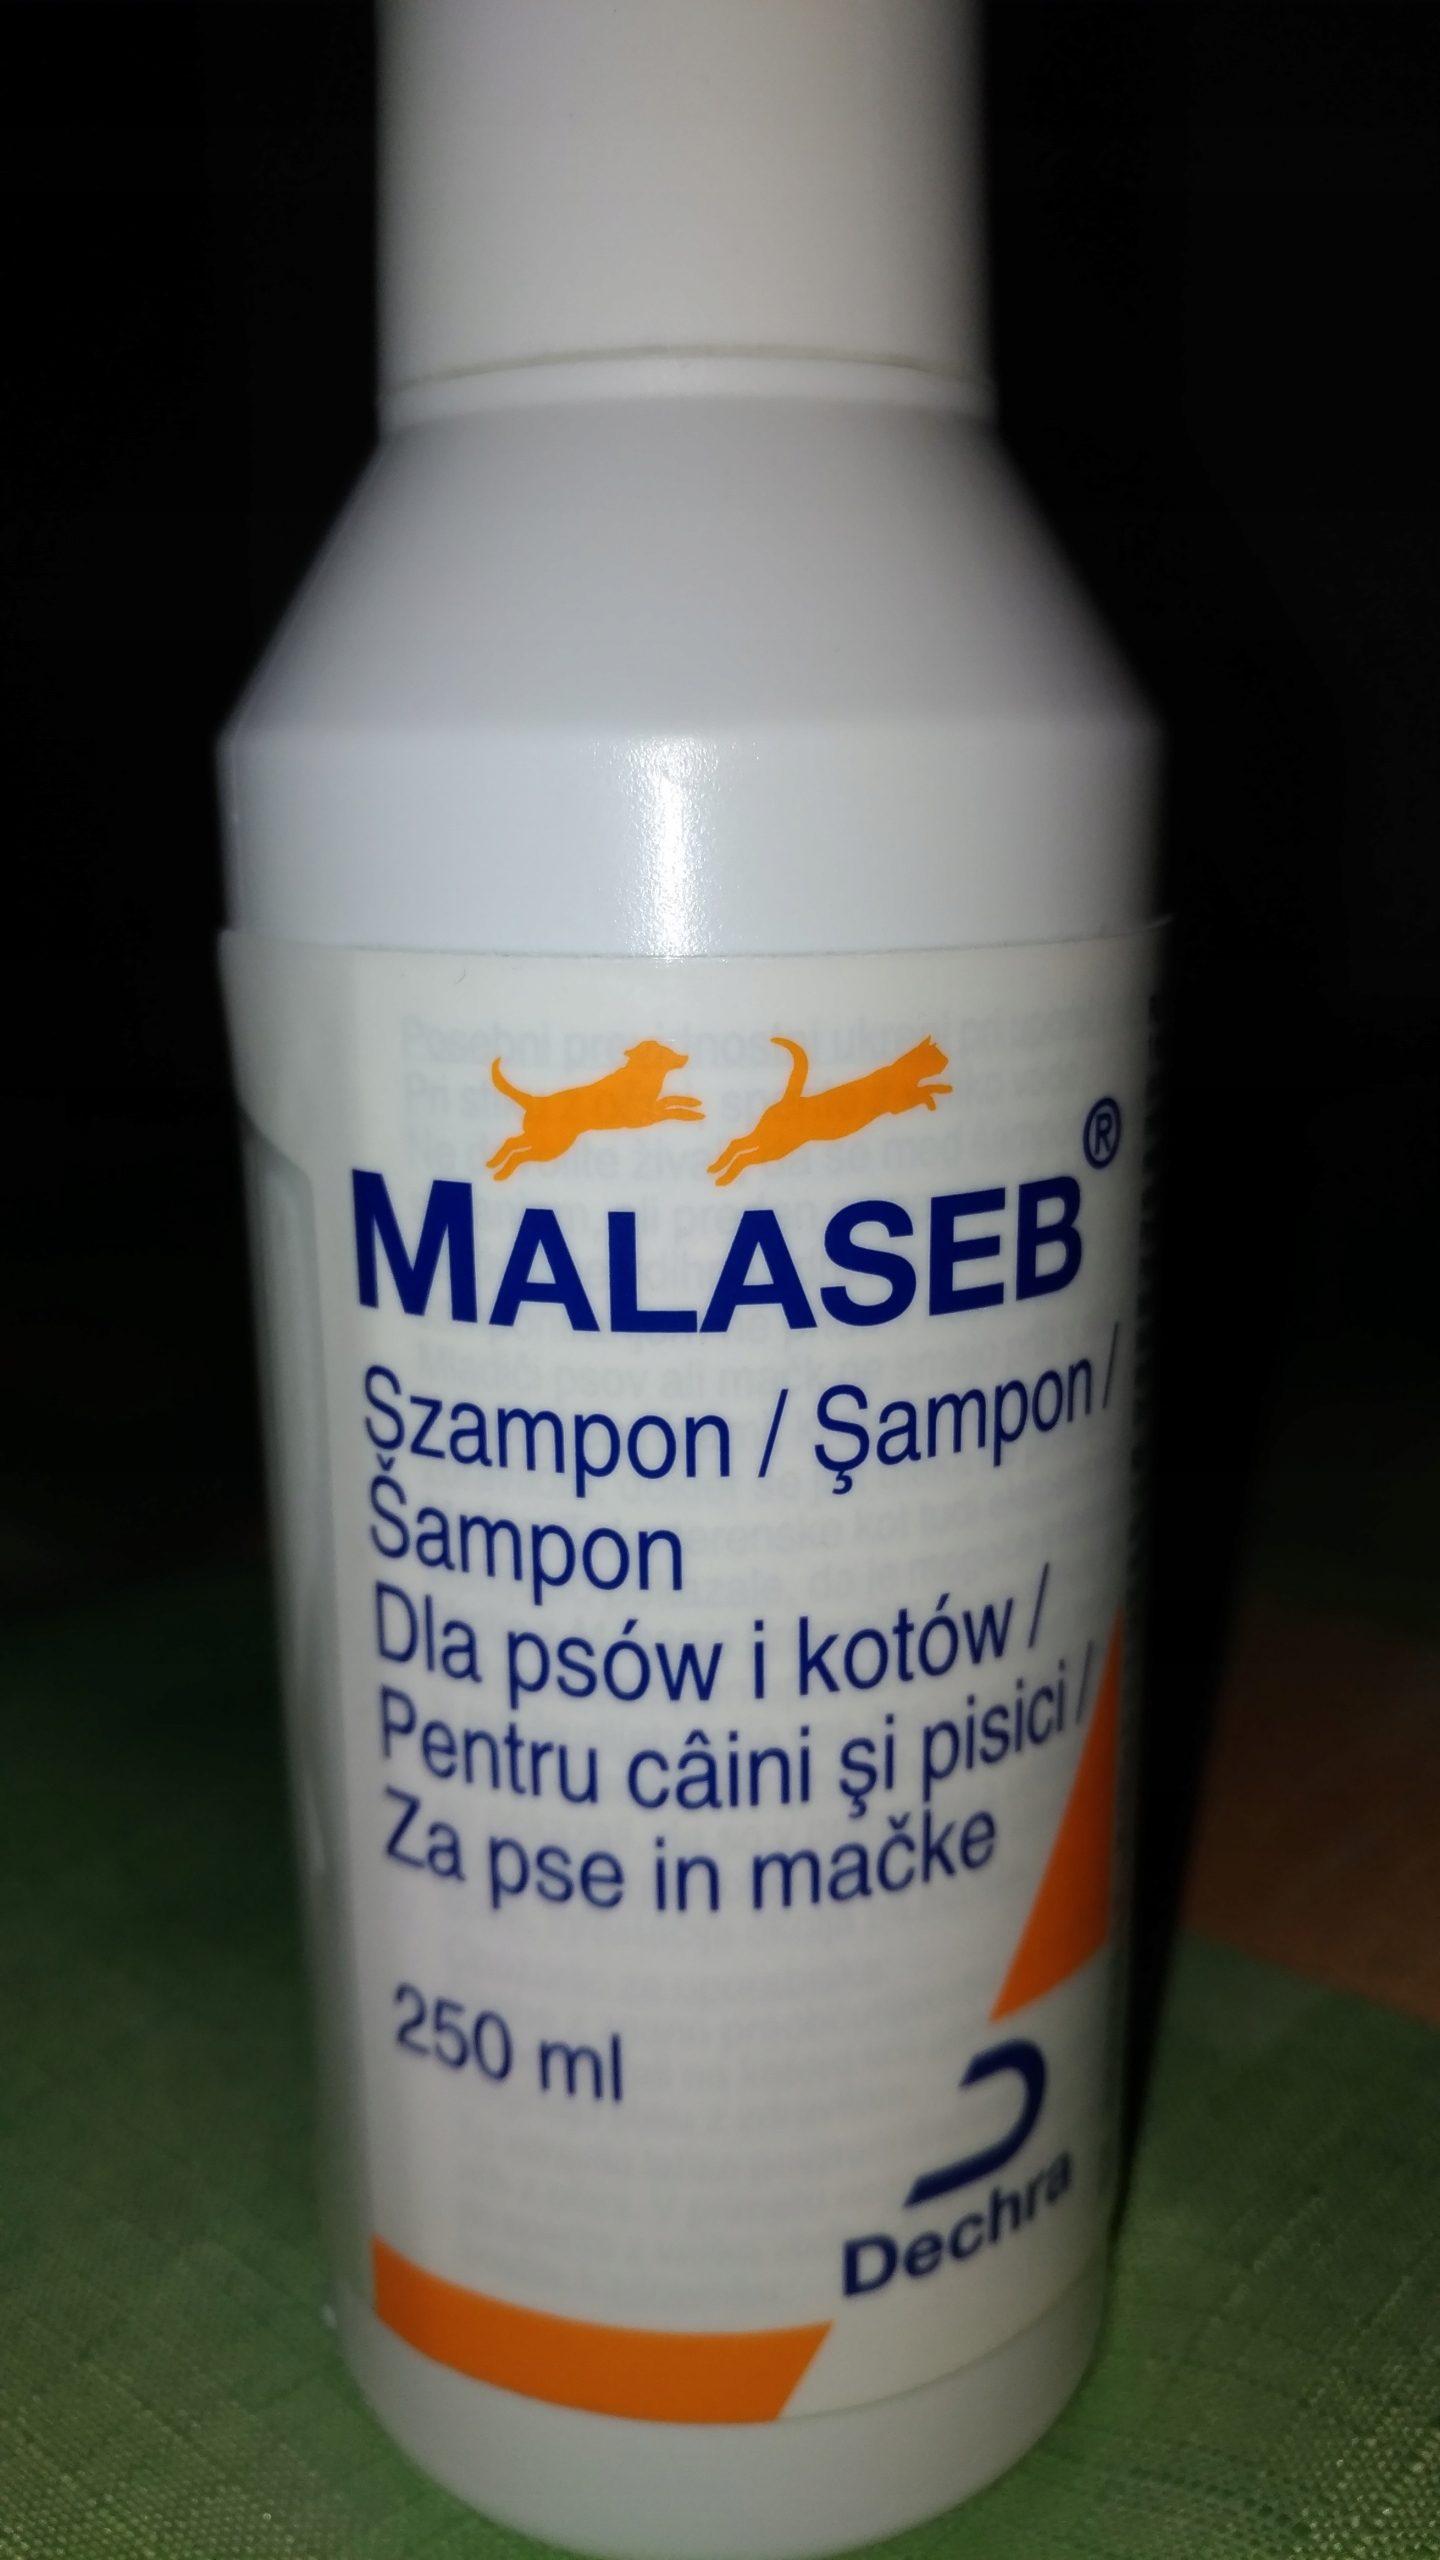 malaseb szampon ceneo